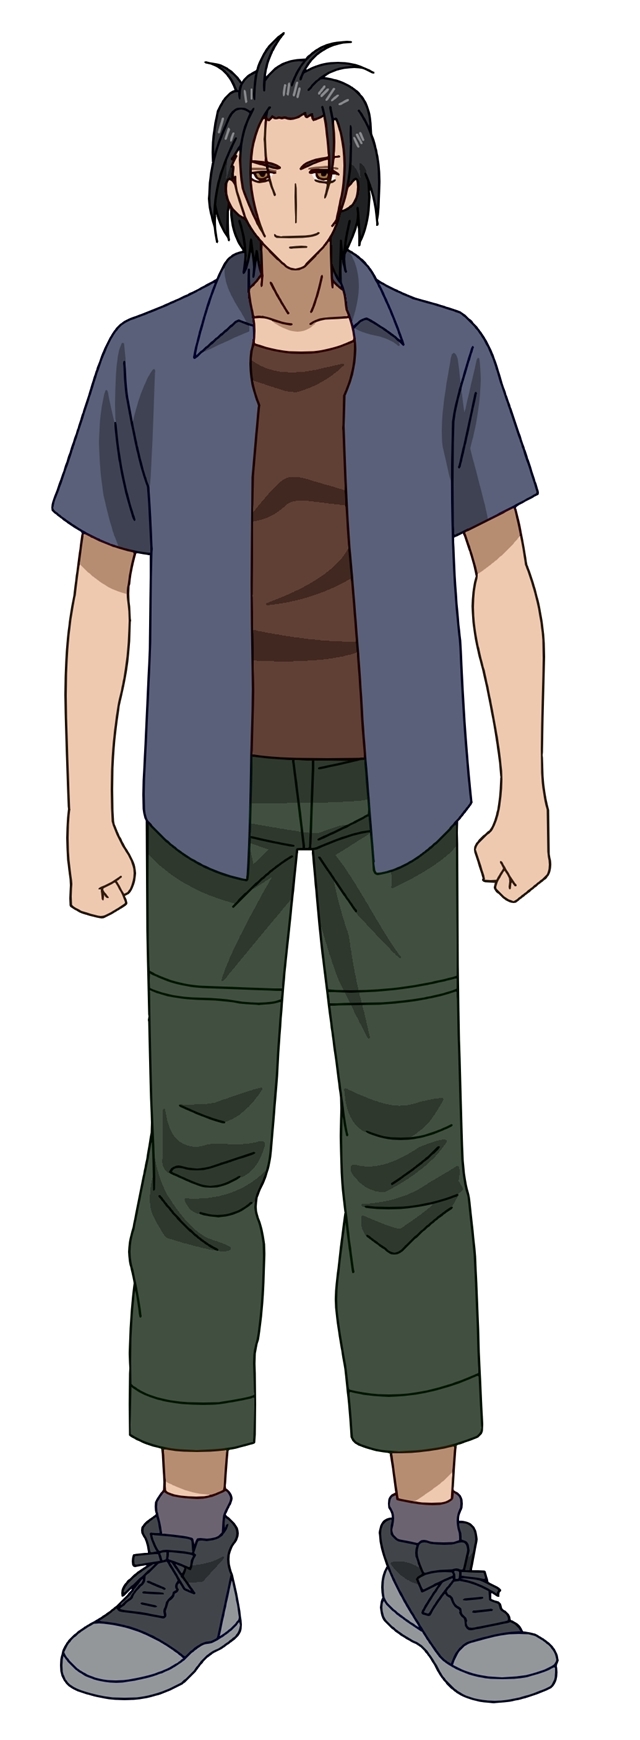 アニメ『7SEEDS』冬のチームのキャラクターを演じる声優陣とキャラクタービジュアルが発表！　鮫島吹雪役は野島健児さん！